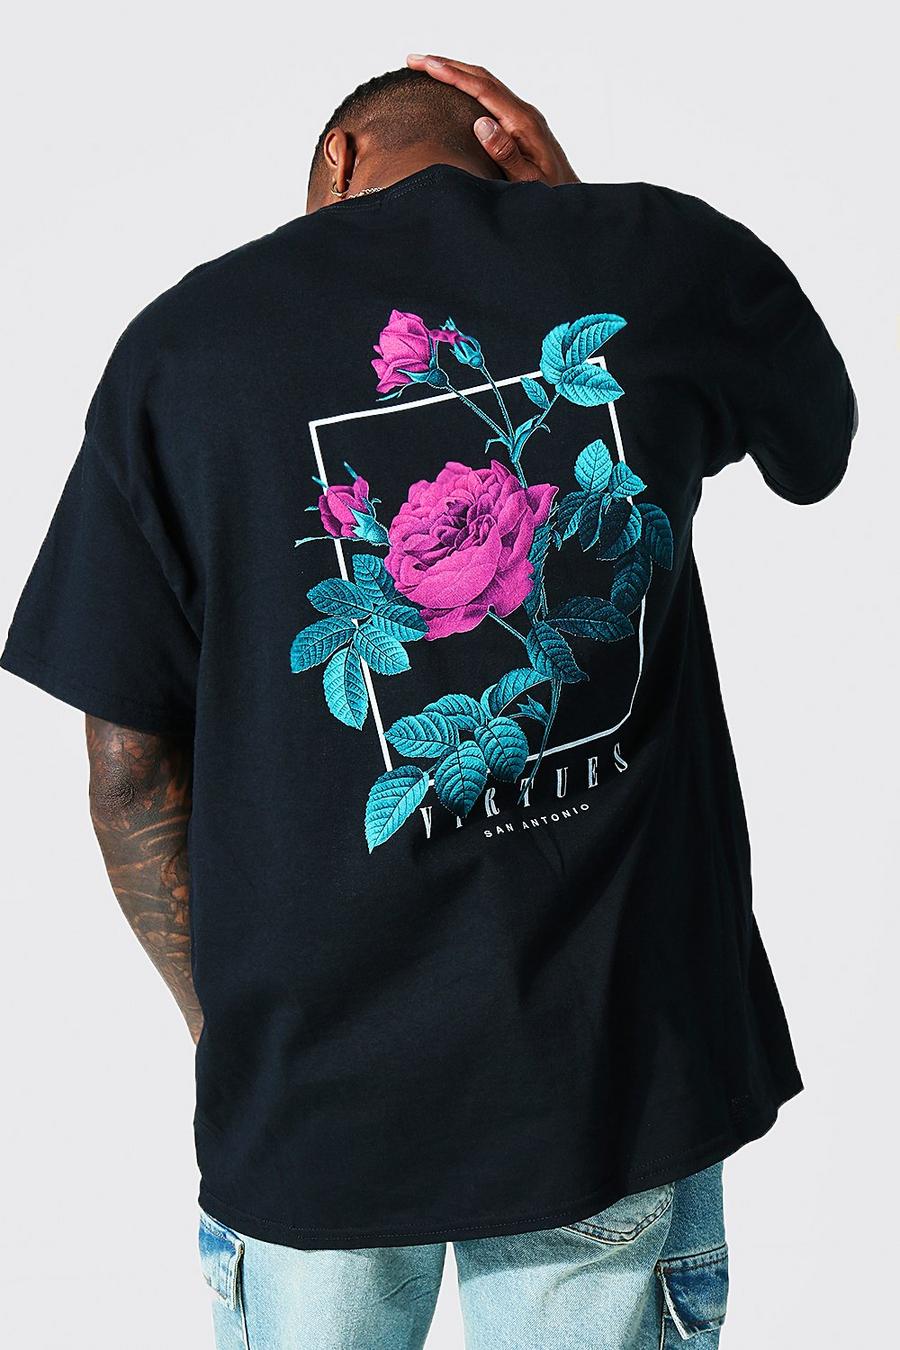 Camiseta oversize con estampado gráfico Virtues, Black nero